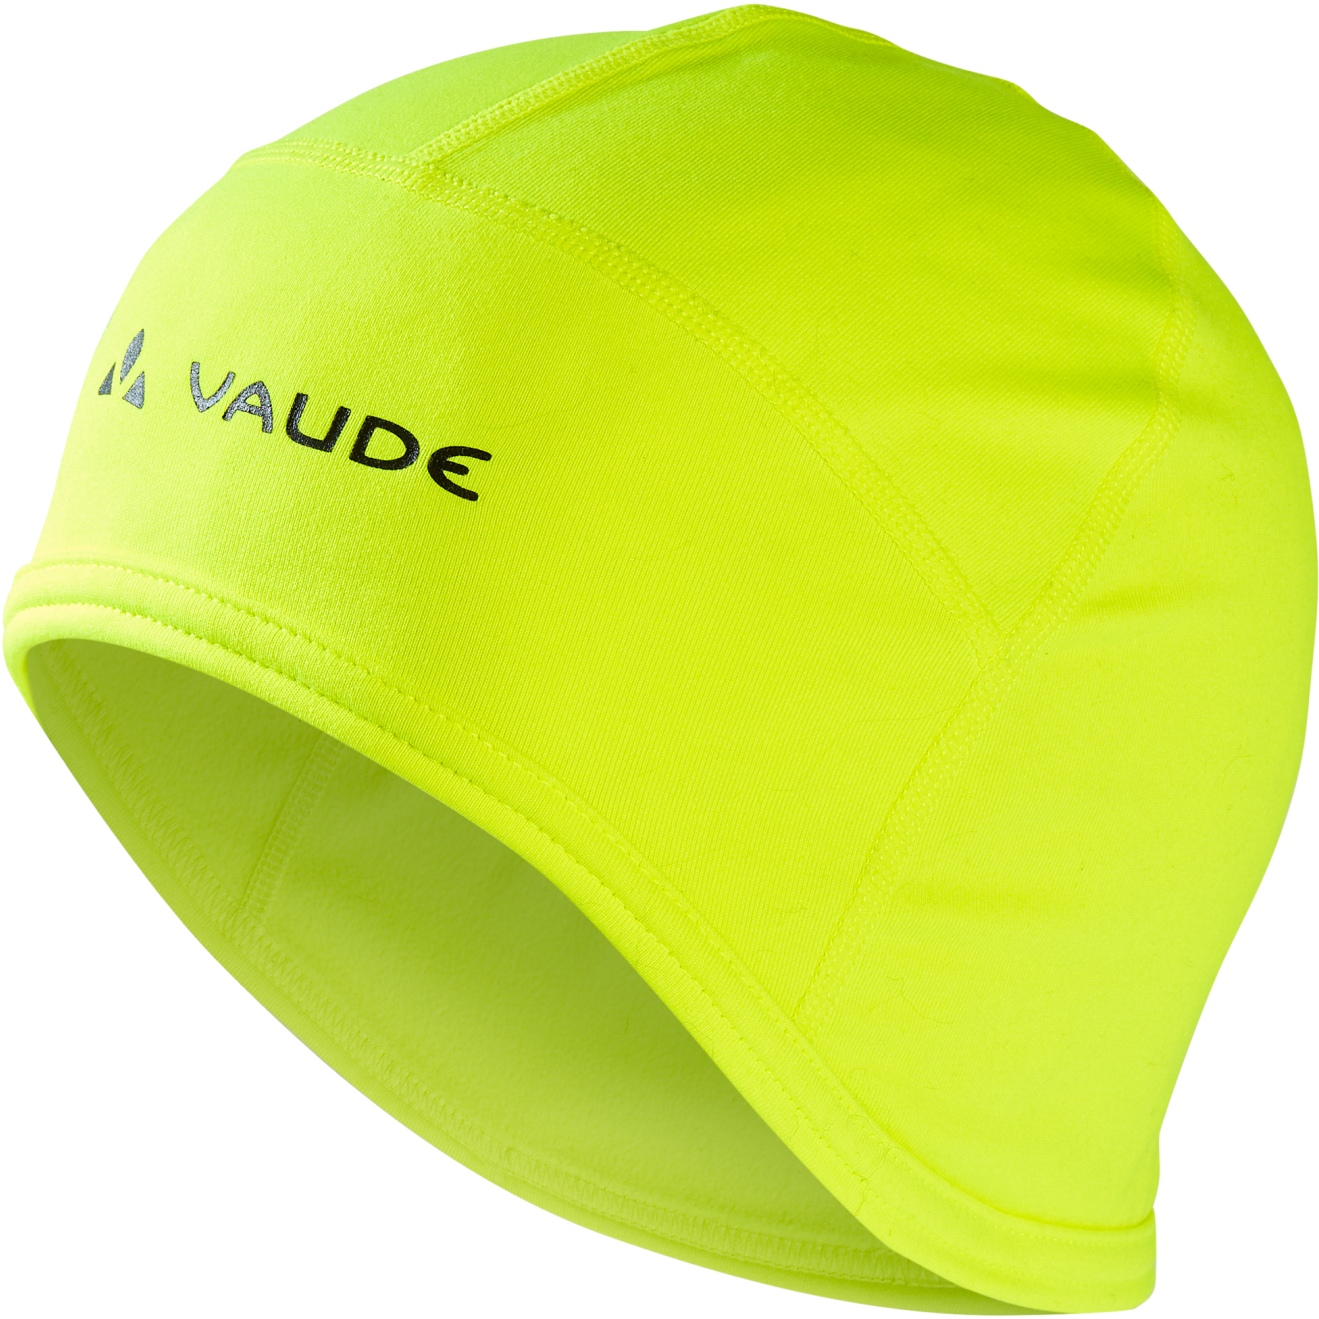 Produktbild von Vaude Bike Warm Unterhelm - neon gelb